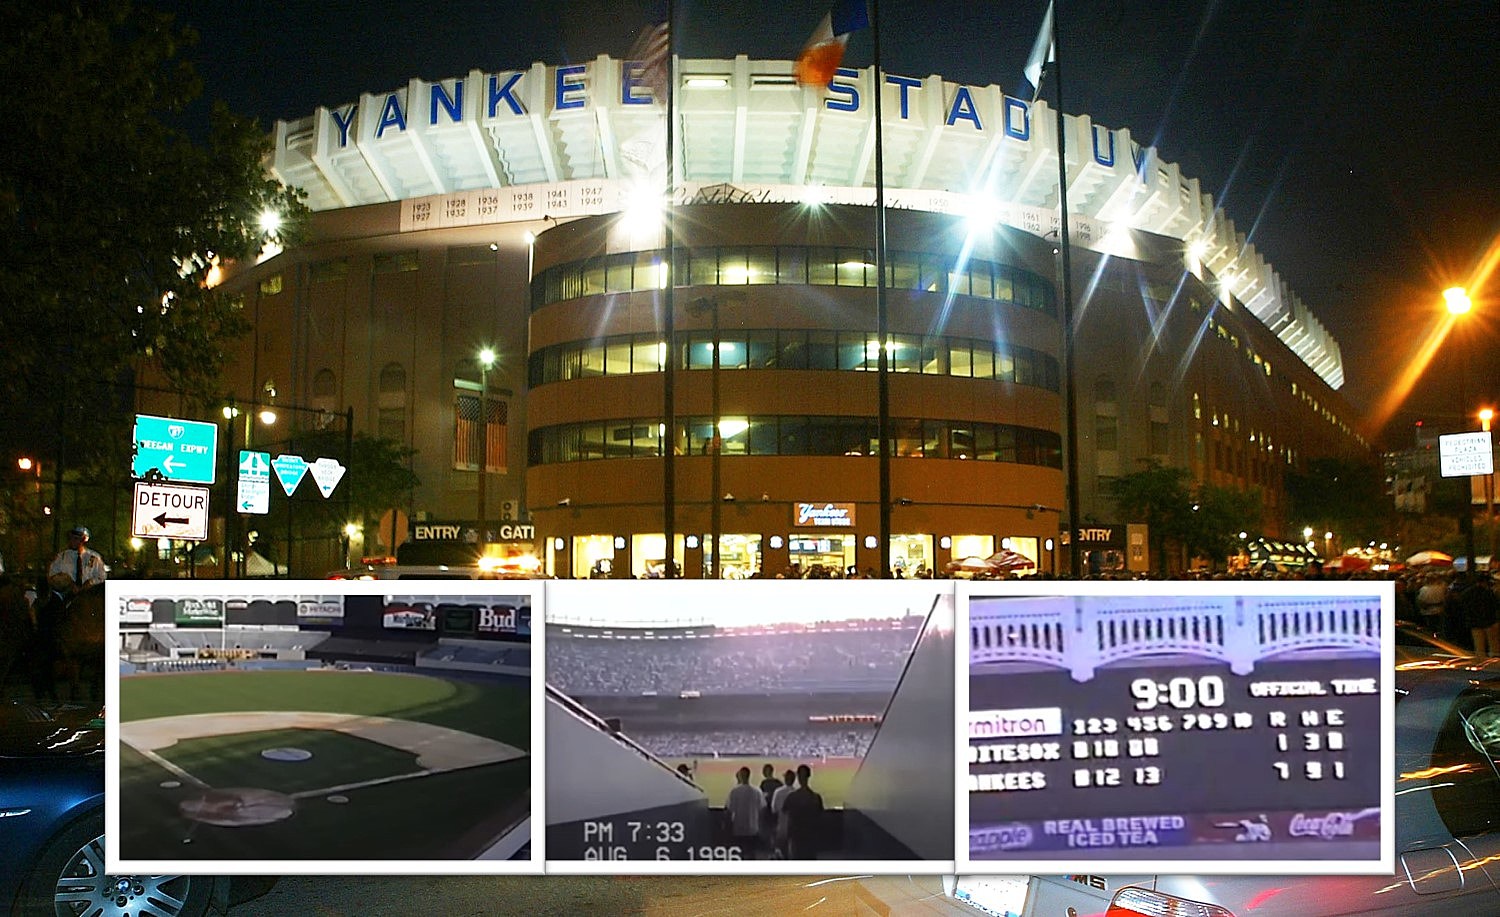 The Original Yankee Stadium - Photographs and Memories - Stuff